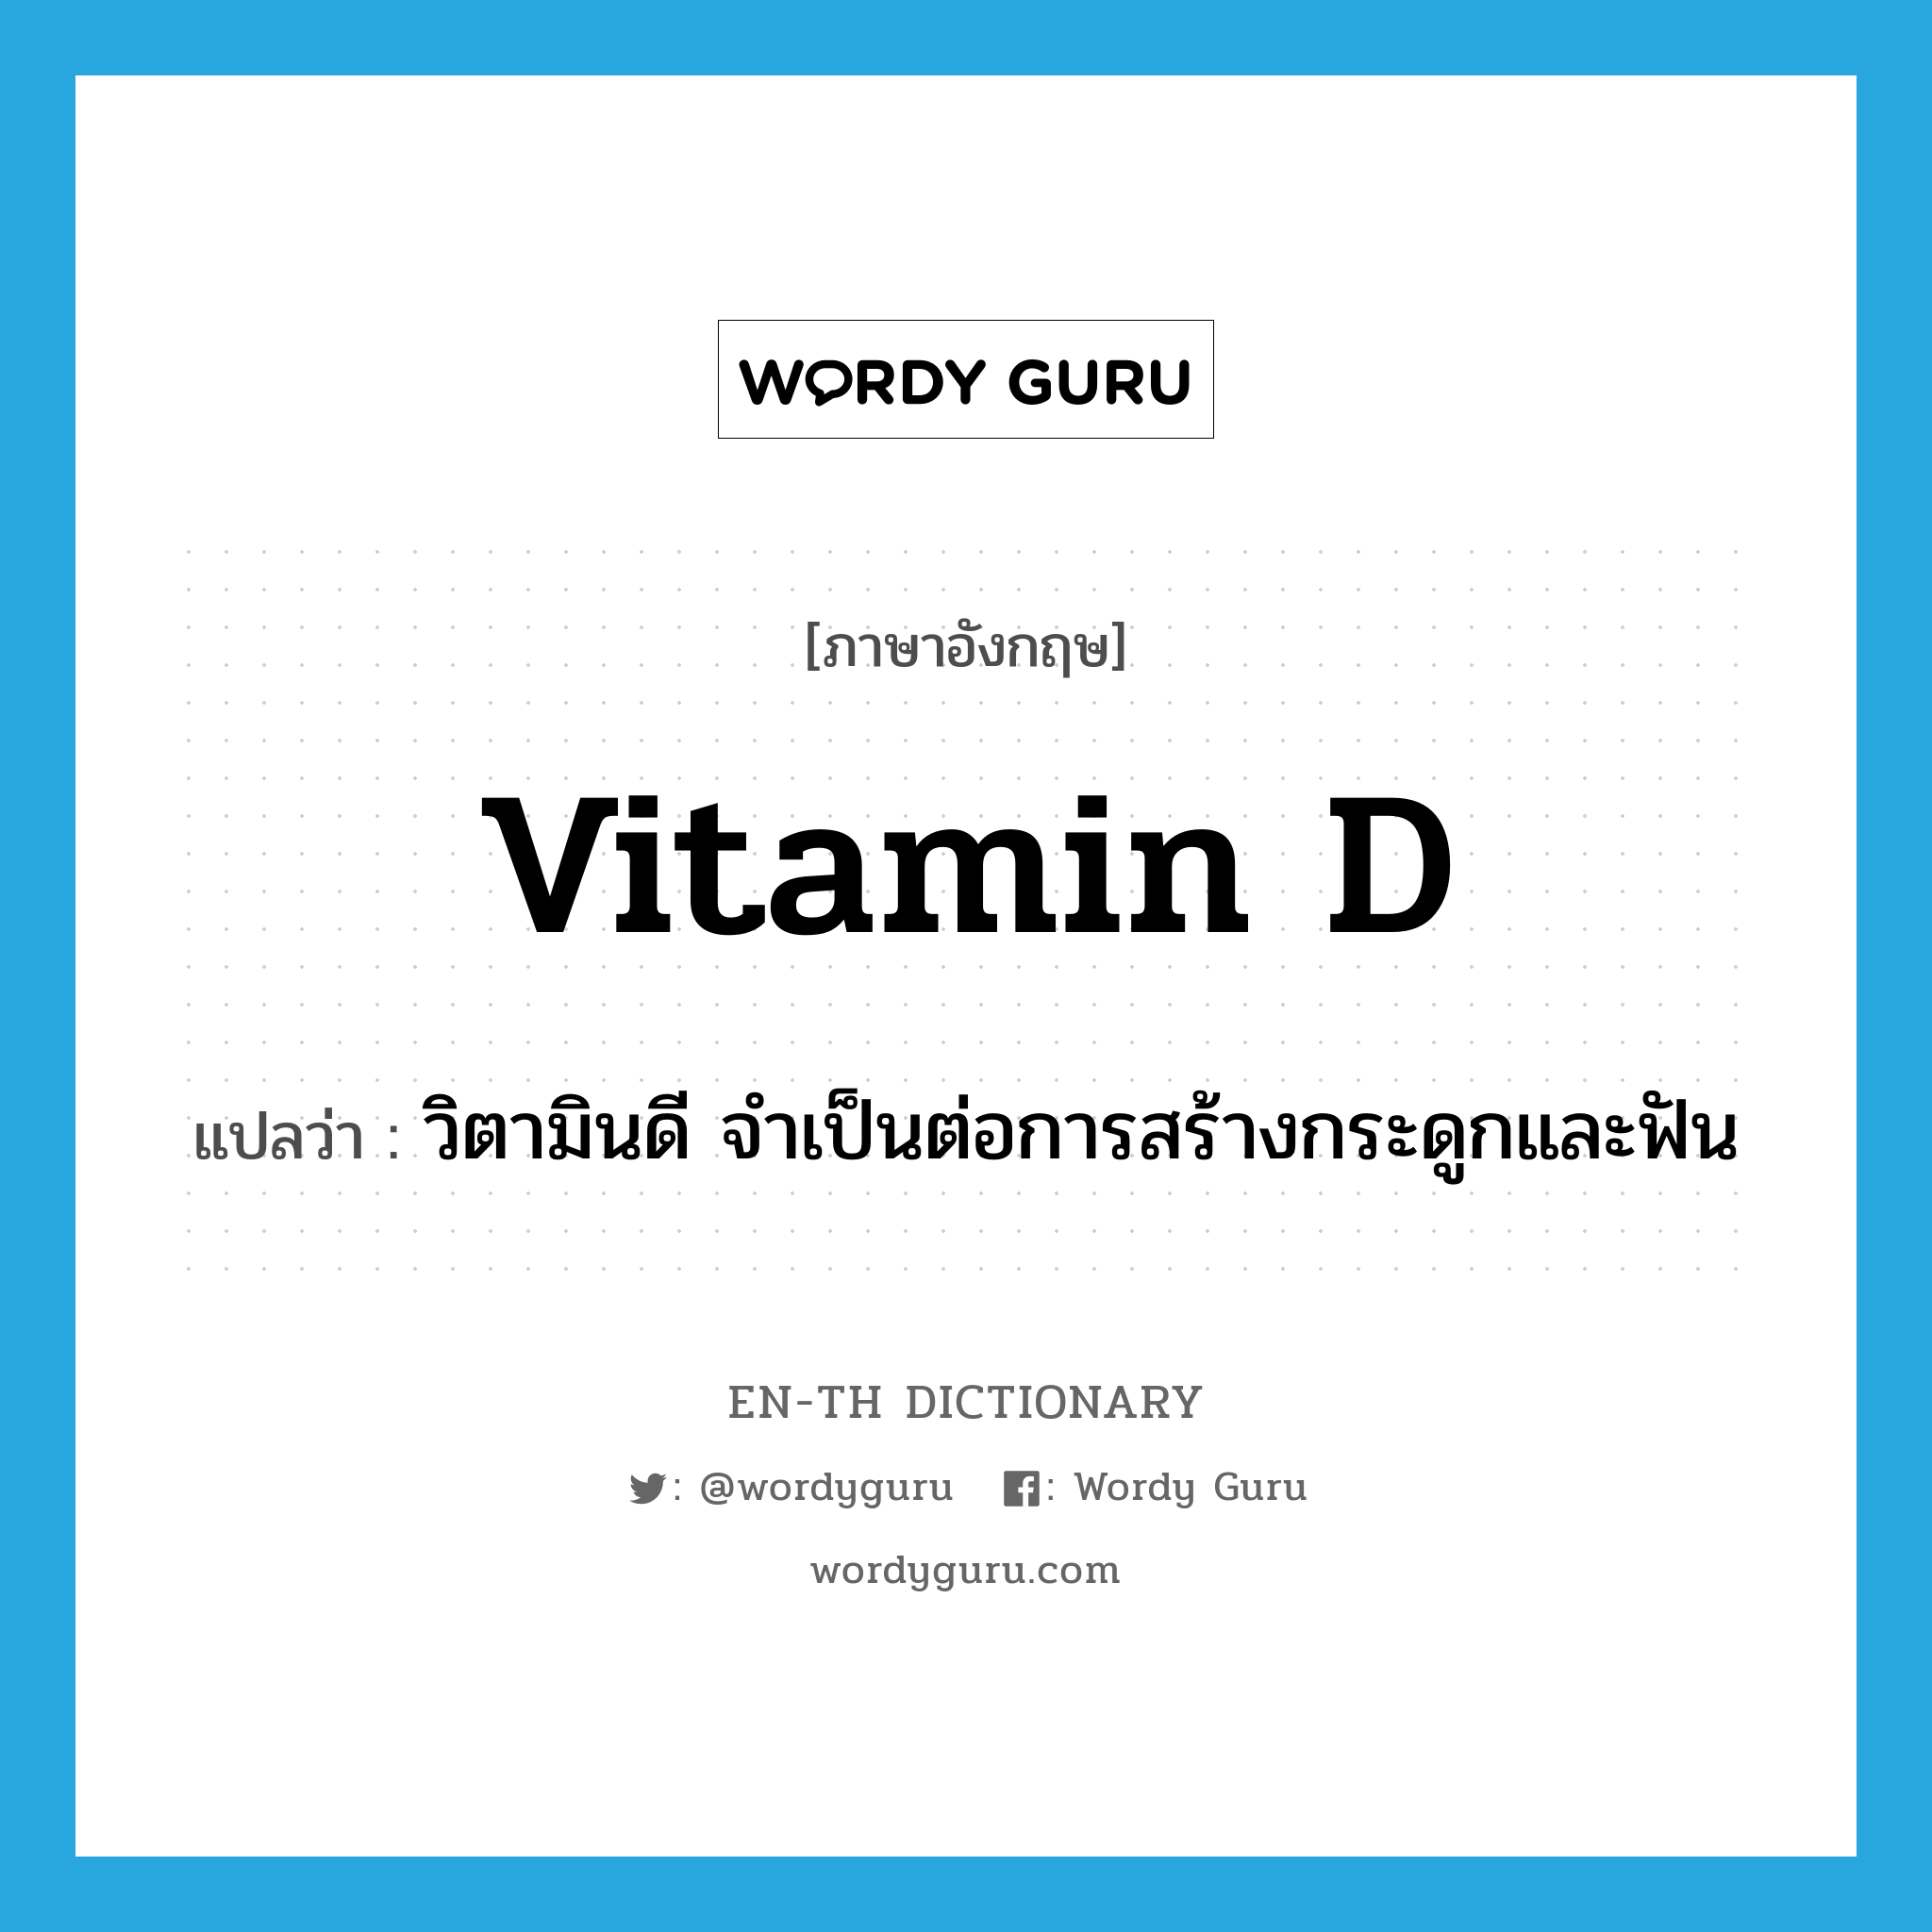 vitamin D แปลว่า?, คำศัพท์ภาษาอังกฤษ vitamin D แปลว่า วิตามินดี จำเป็นต่อการสร้างกระดูกและฟัน ประเภท N หมวด N